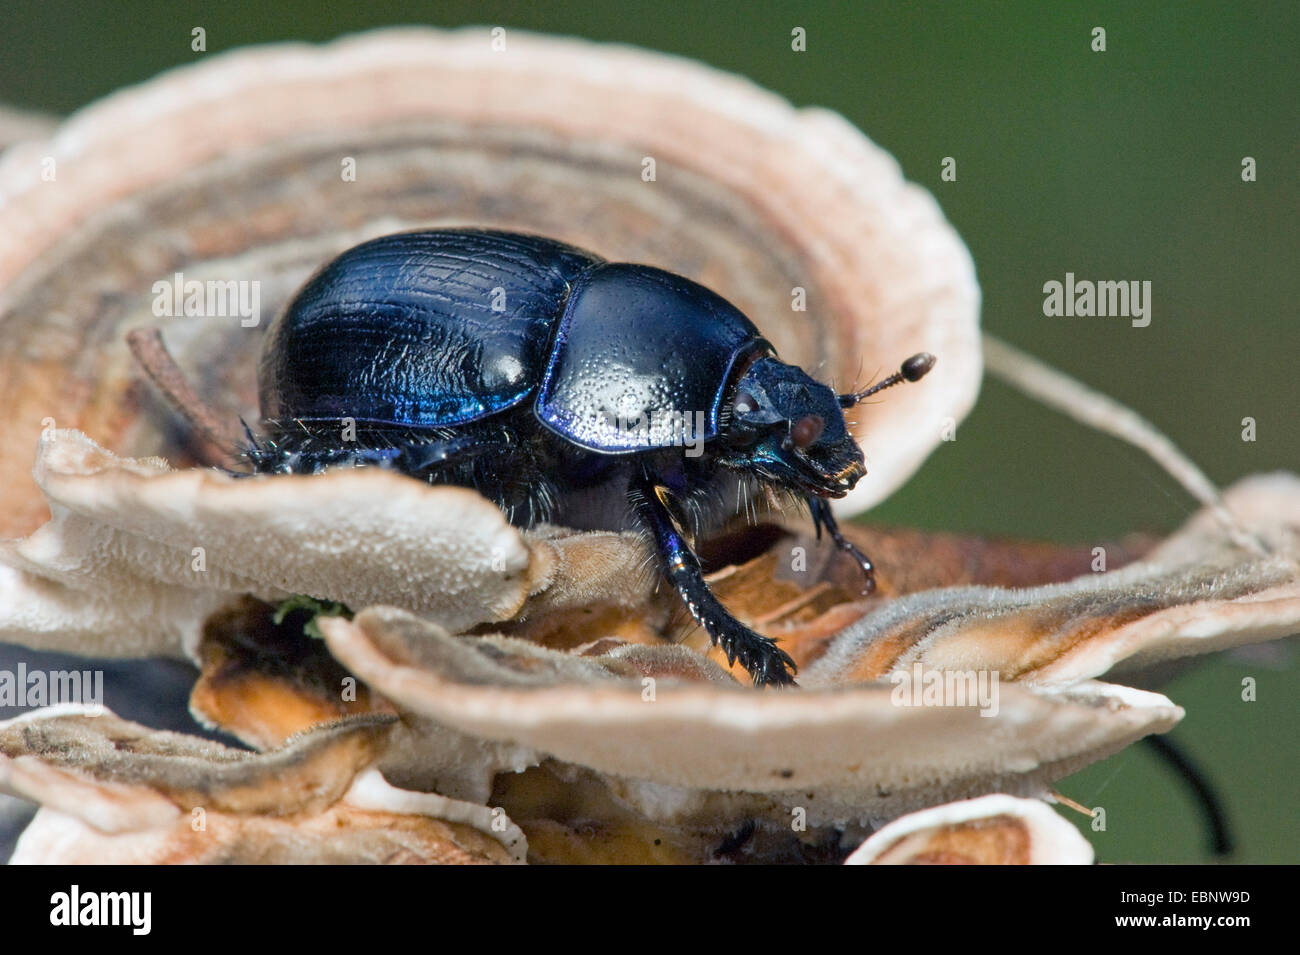 Dor común escarabajo (Anoplotrupes stercorosus, Geotrupes stercorosus), sobre un soporte de hongos, Alemania Foto de stock